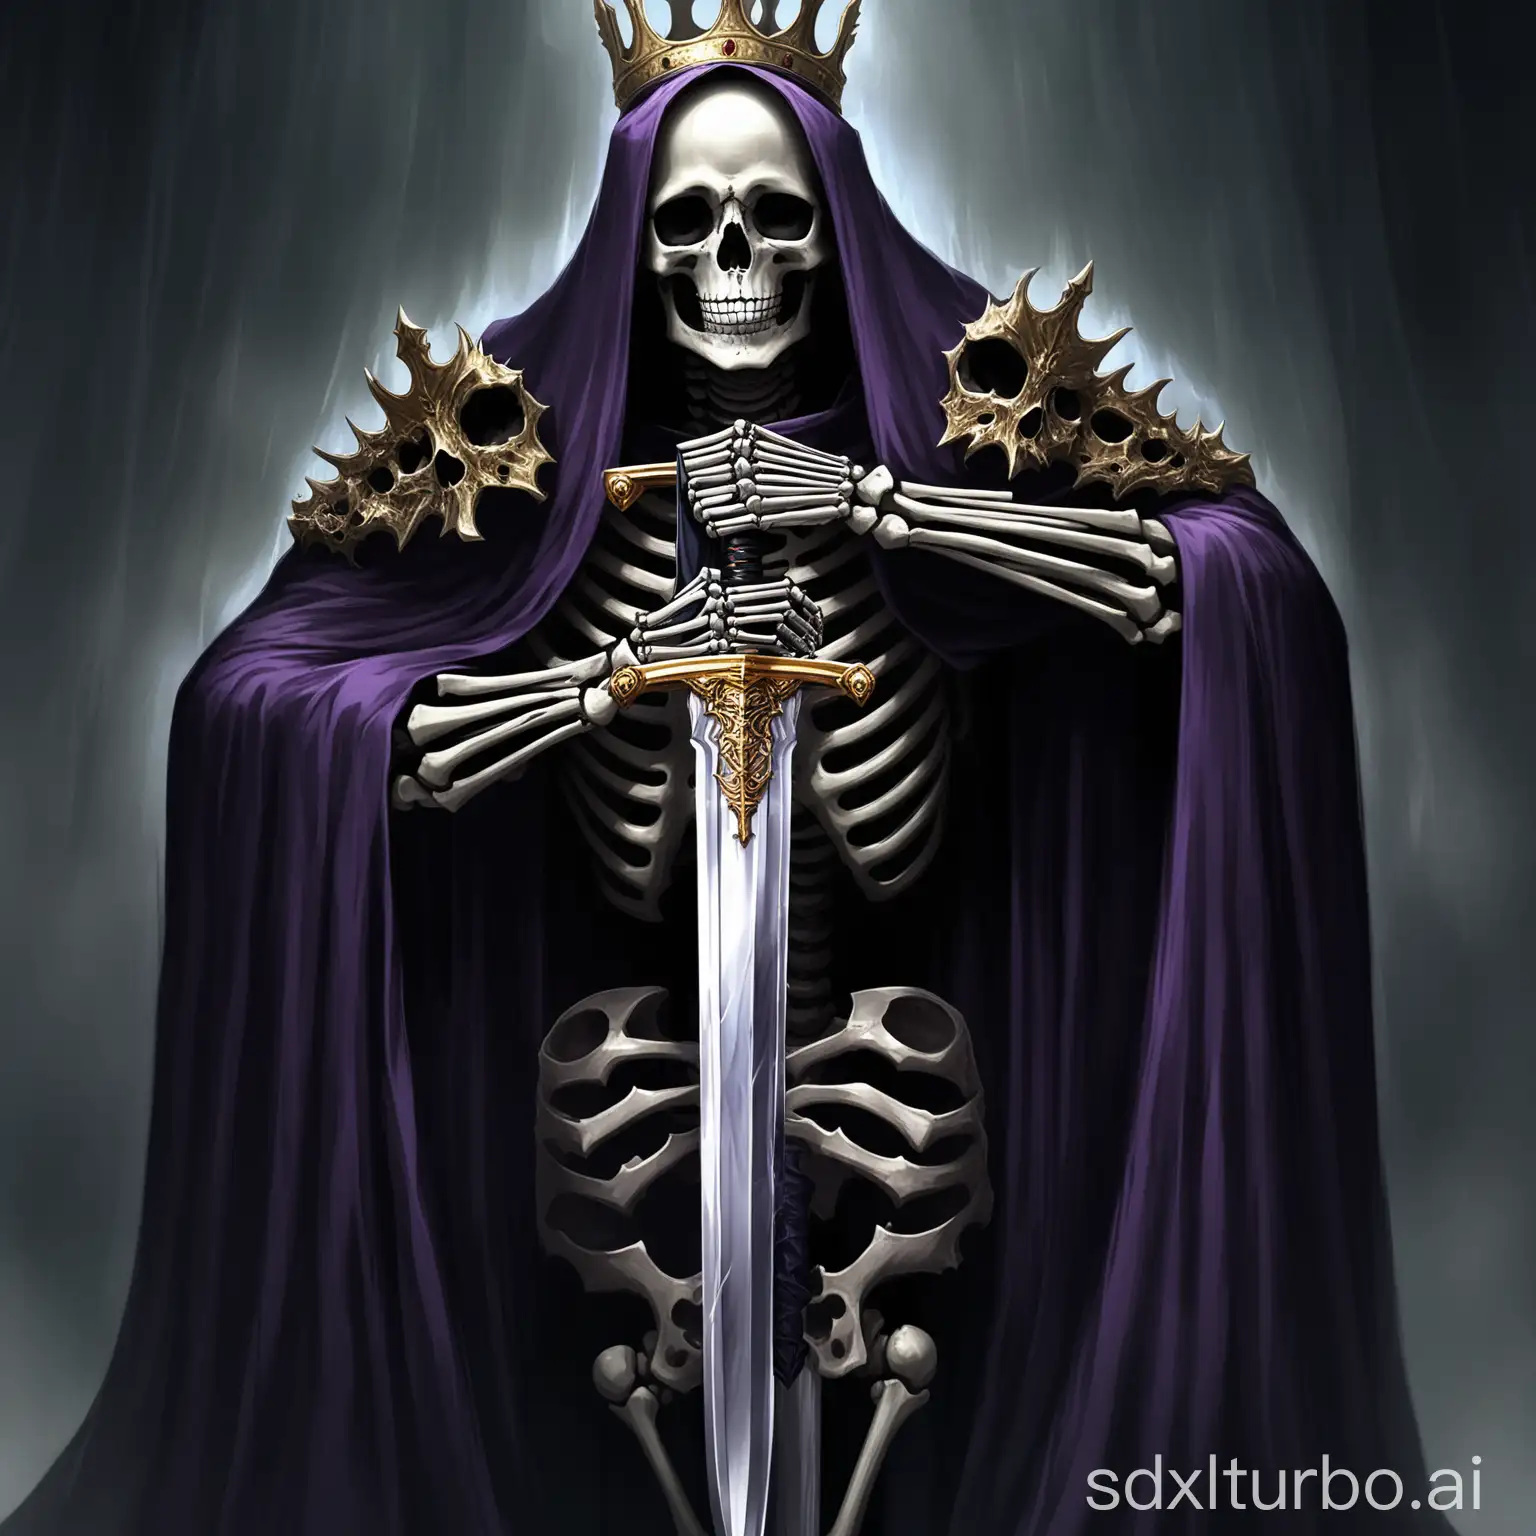 Dark-Emperor-Skeleton-King-with-Sword-in-Hand